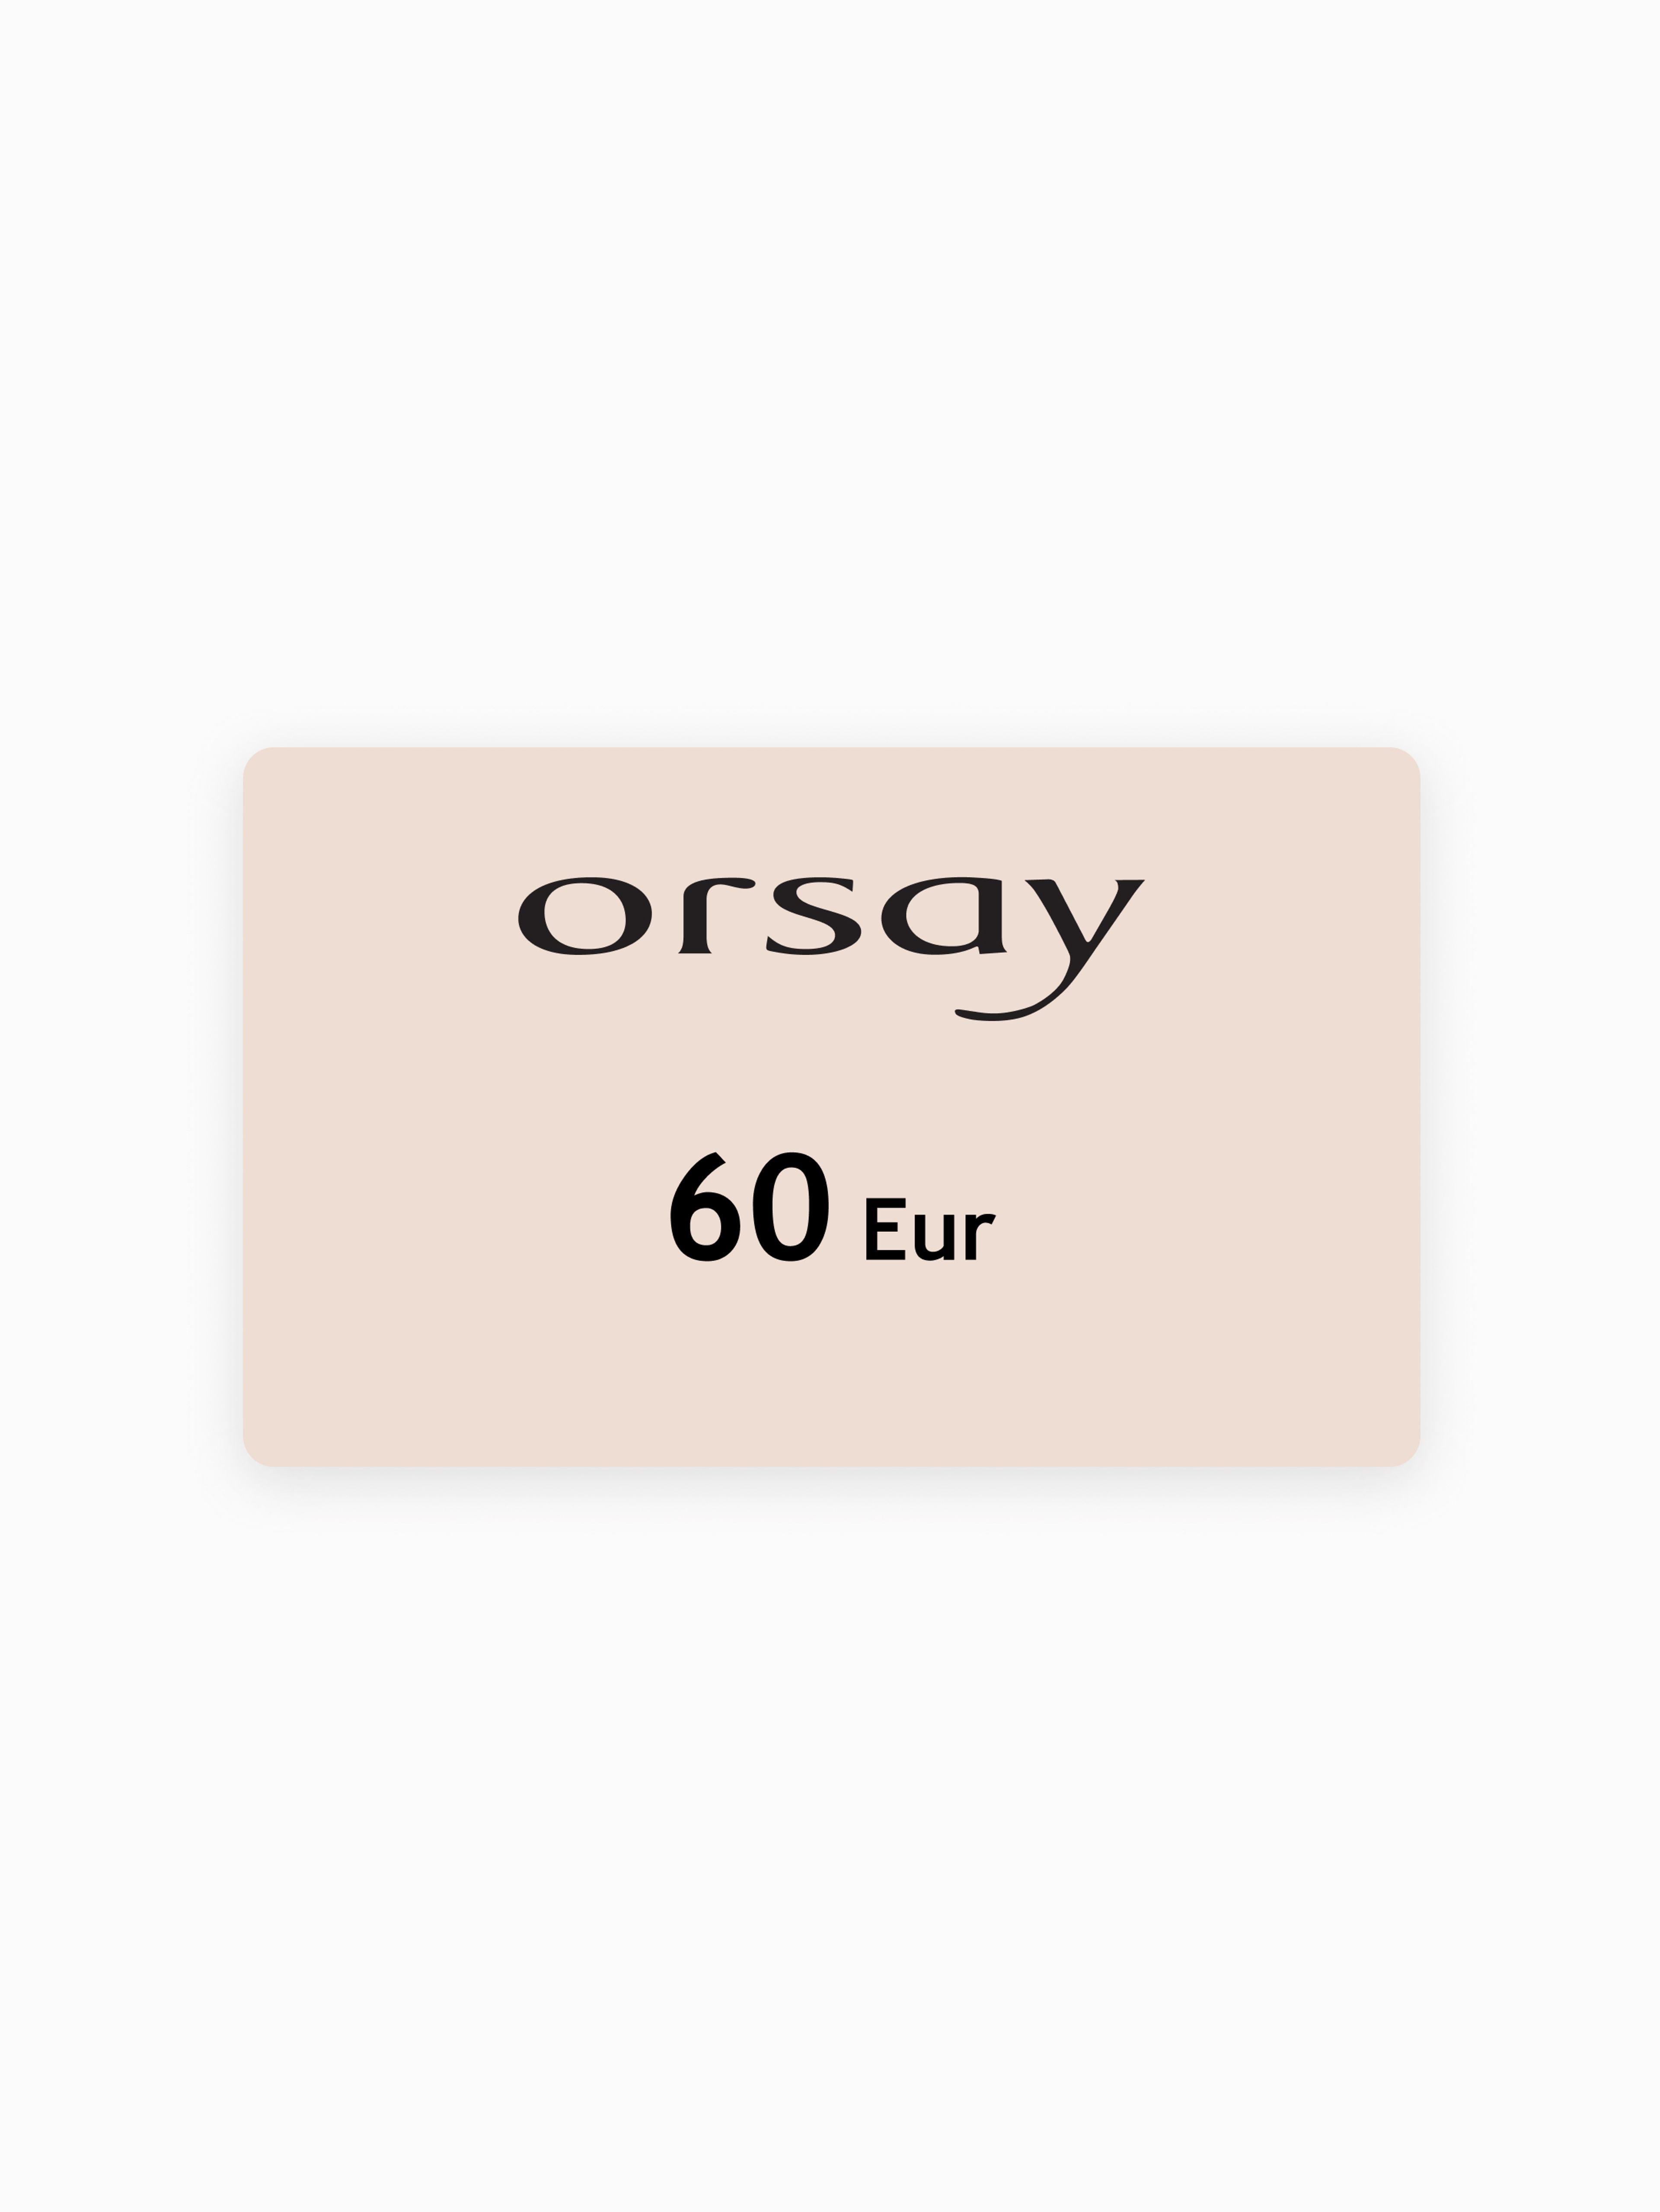 Elektronički bon ORSAY u vrijednosti 60 EUR